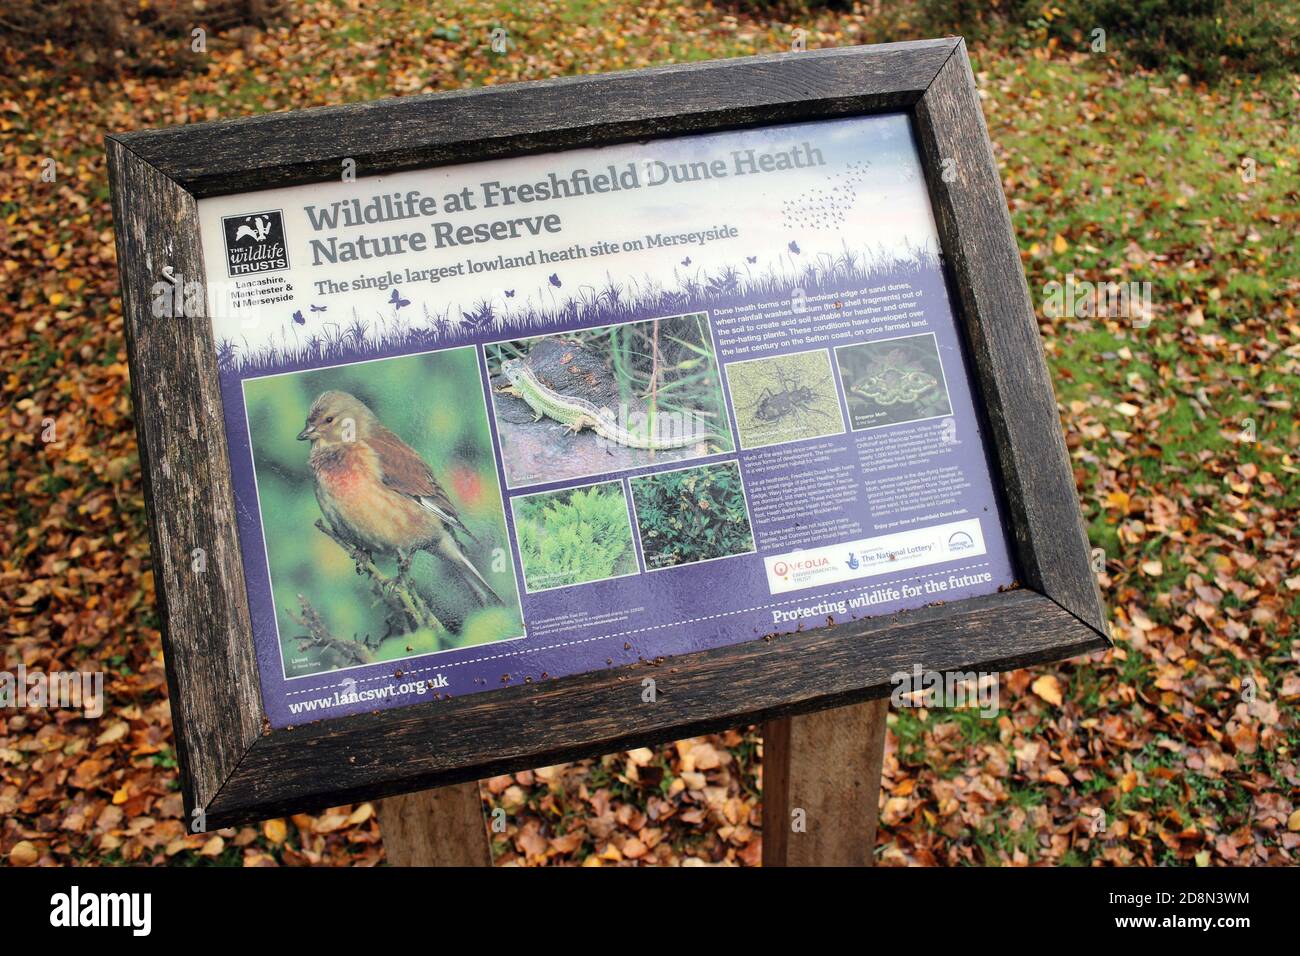 Signo que muestra la vida silvestre en la Reserva Natural de Freshfield Dune Heath, Merseyside, Reino Unido Foto de stock